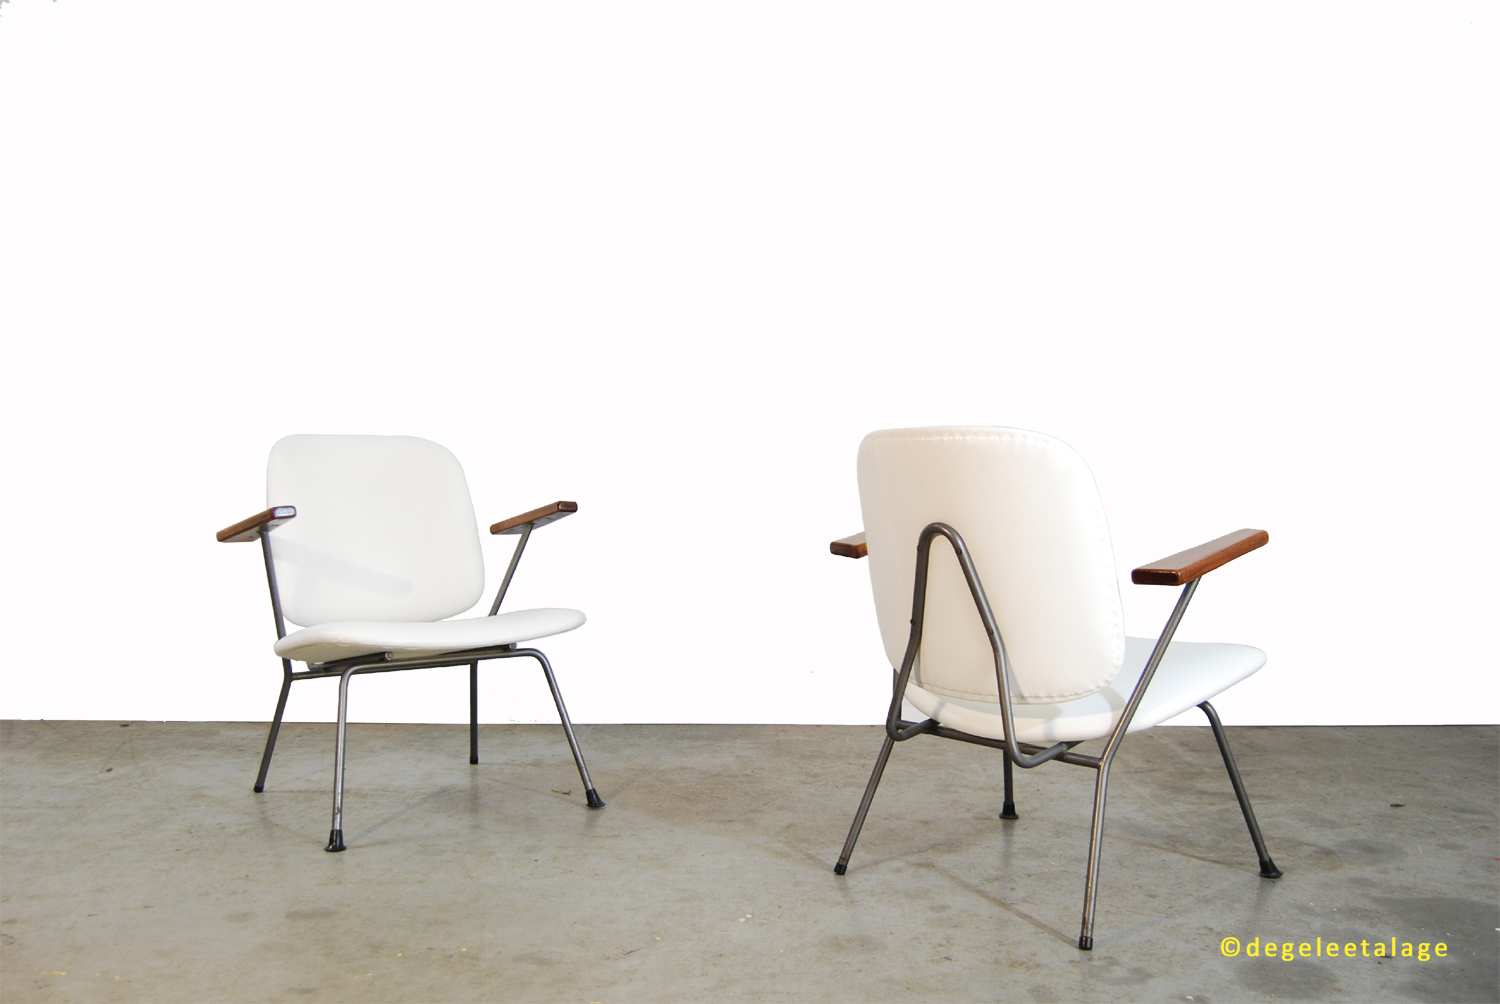 Omleiden draagbaar Bedachtzaam Vintage industriële design fauteuil / Kembo Gispen / 1950s / industrial  easy chair | DE GELE ETALAGE